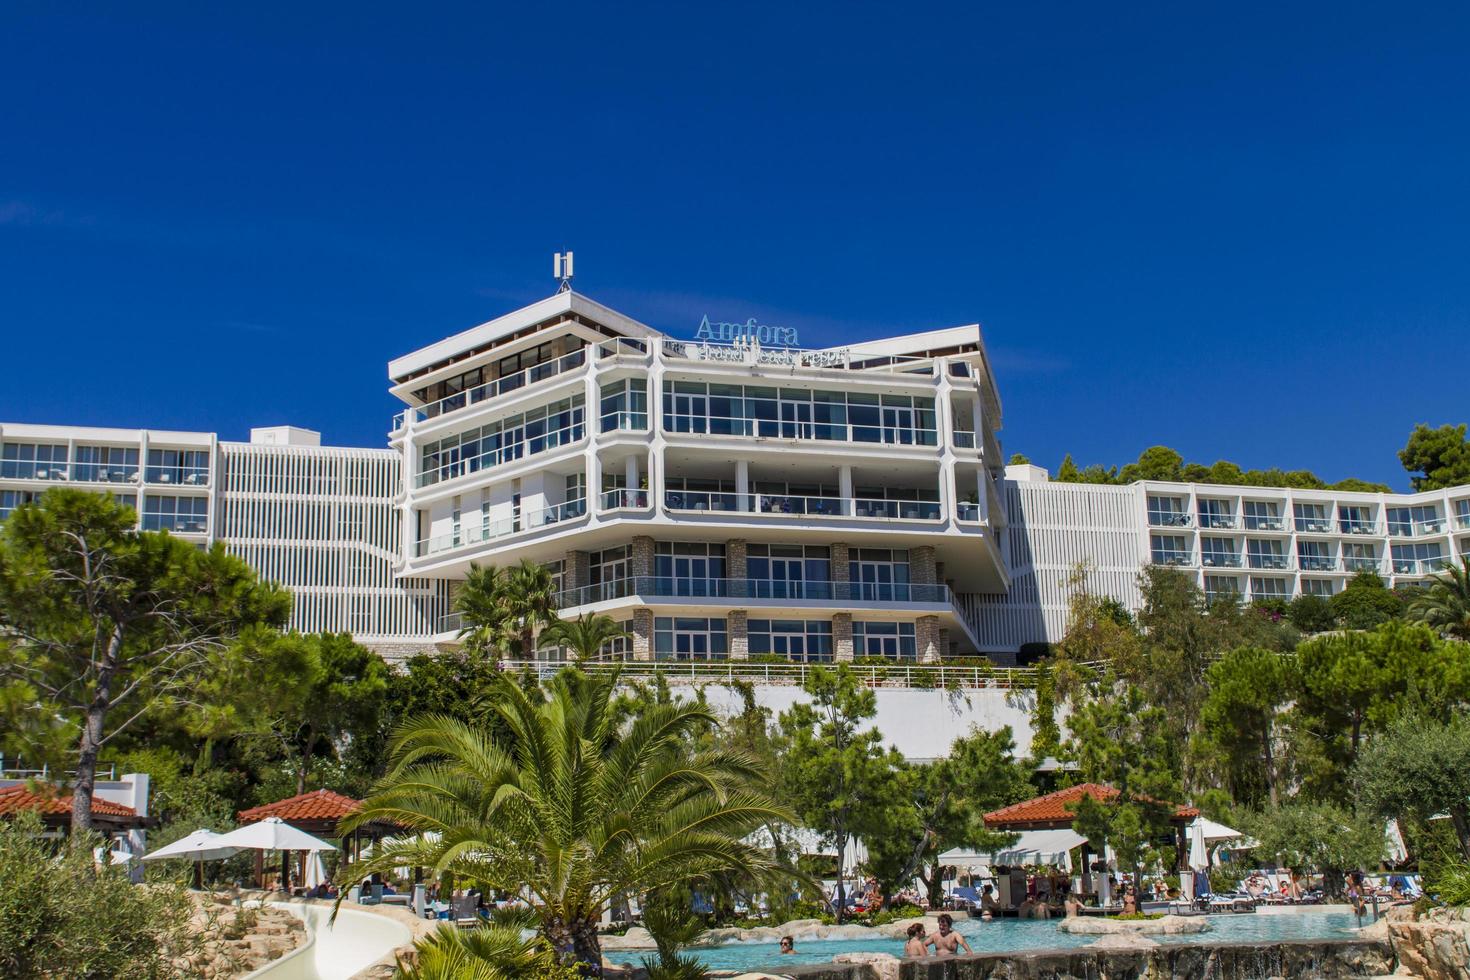 Hvar, croazia, 8 settembre 2014 - persone non identificate all'hotel amfora sull'isola di hvar, croazia. l'hotel dispone di 330 camere. foto